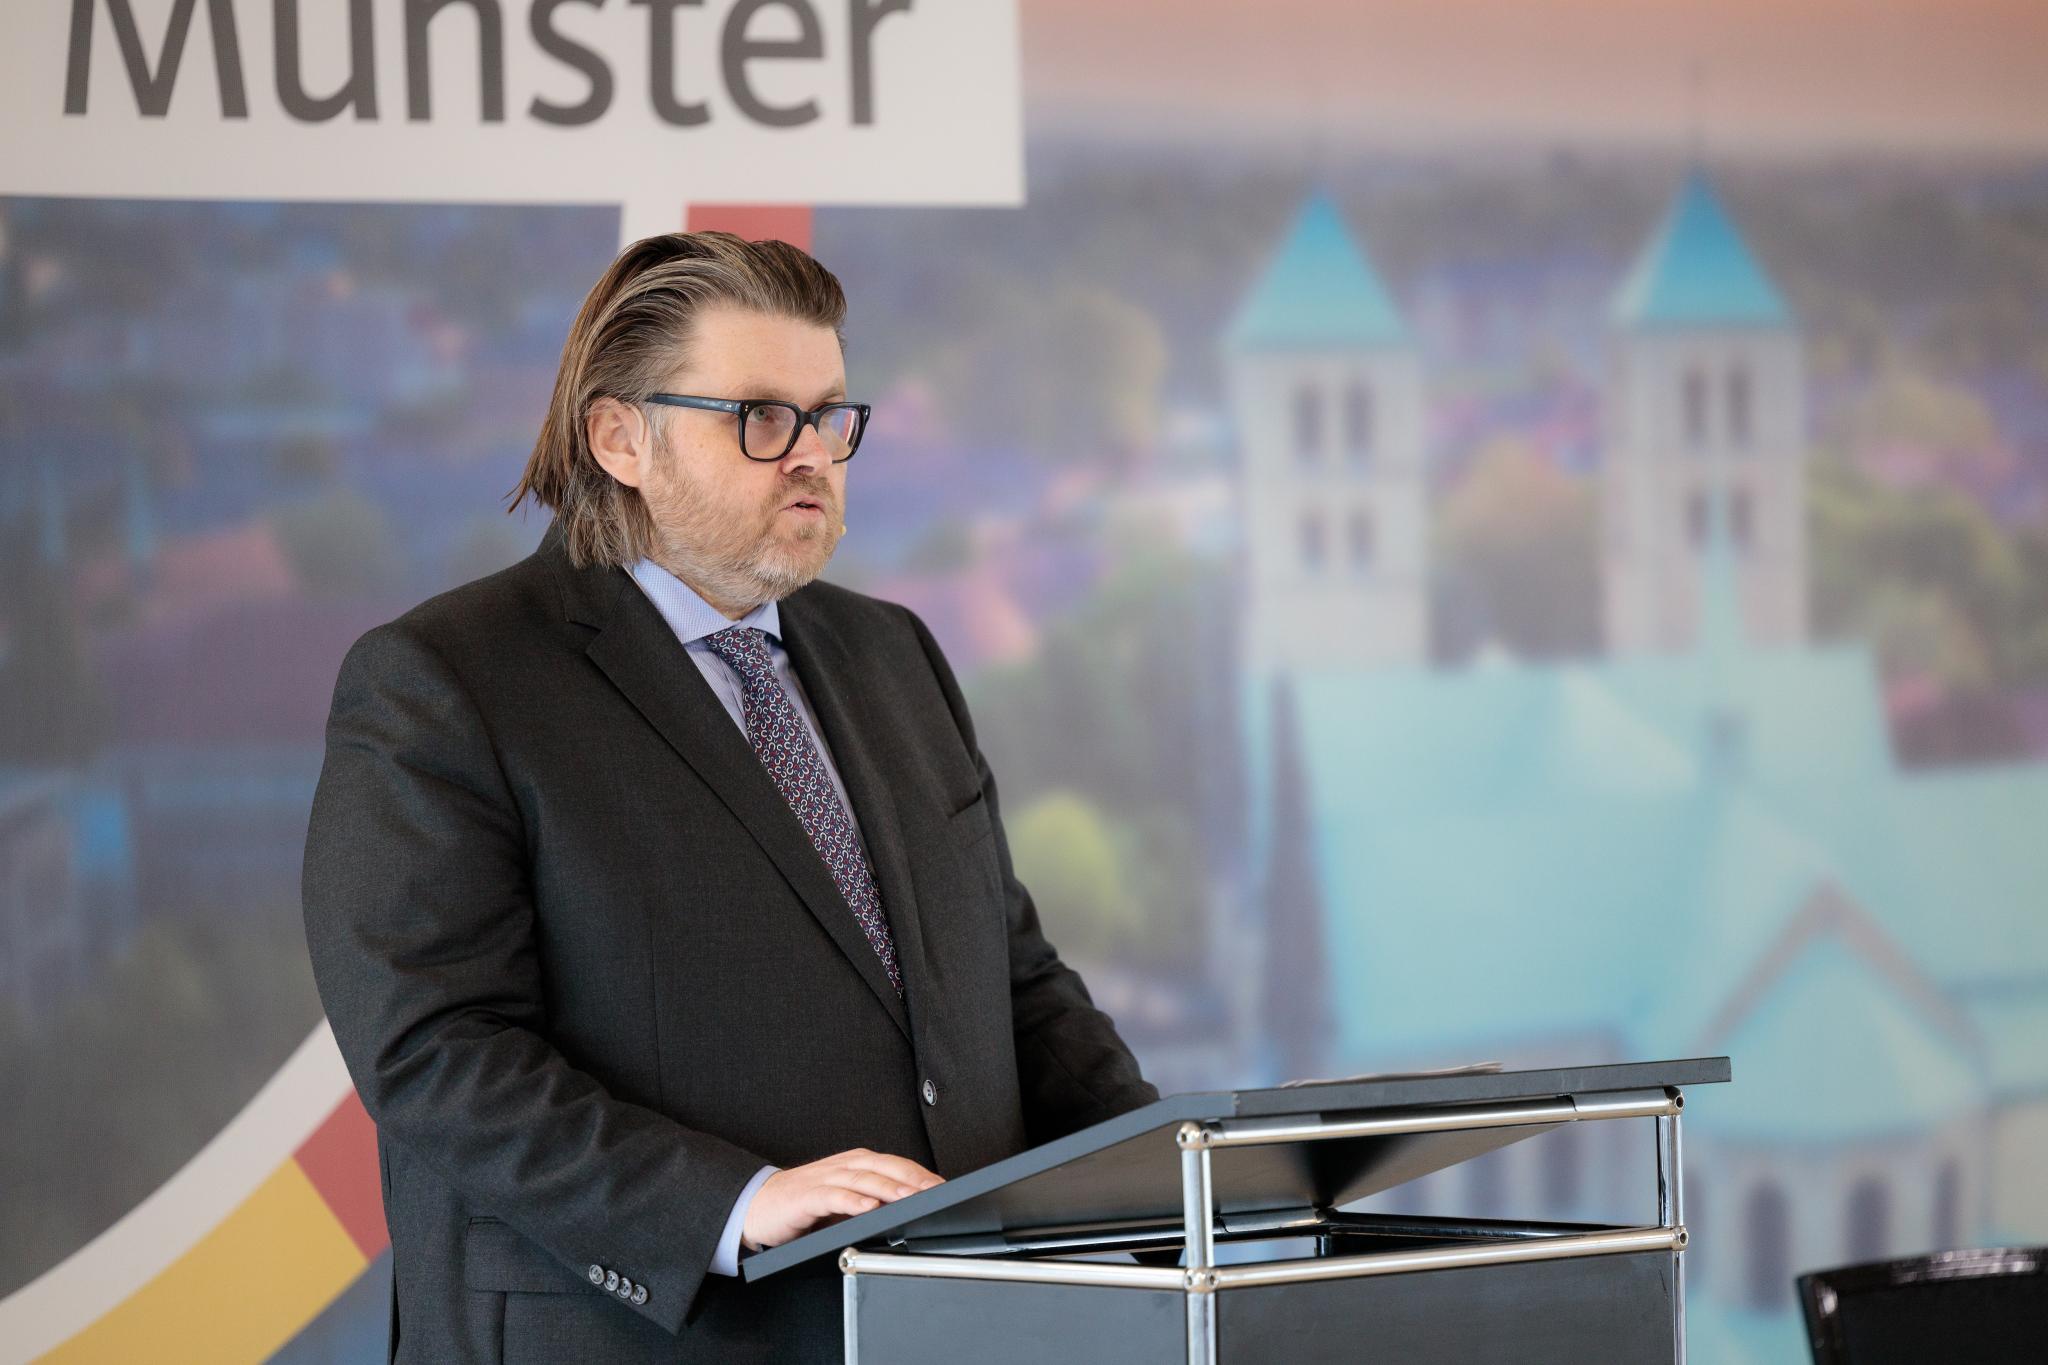 CDU-Vorsitzender Hendrik Grau; Foto: CDU Münster